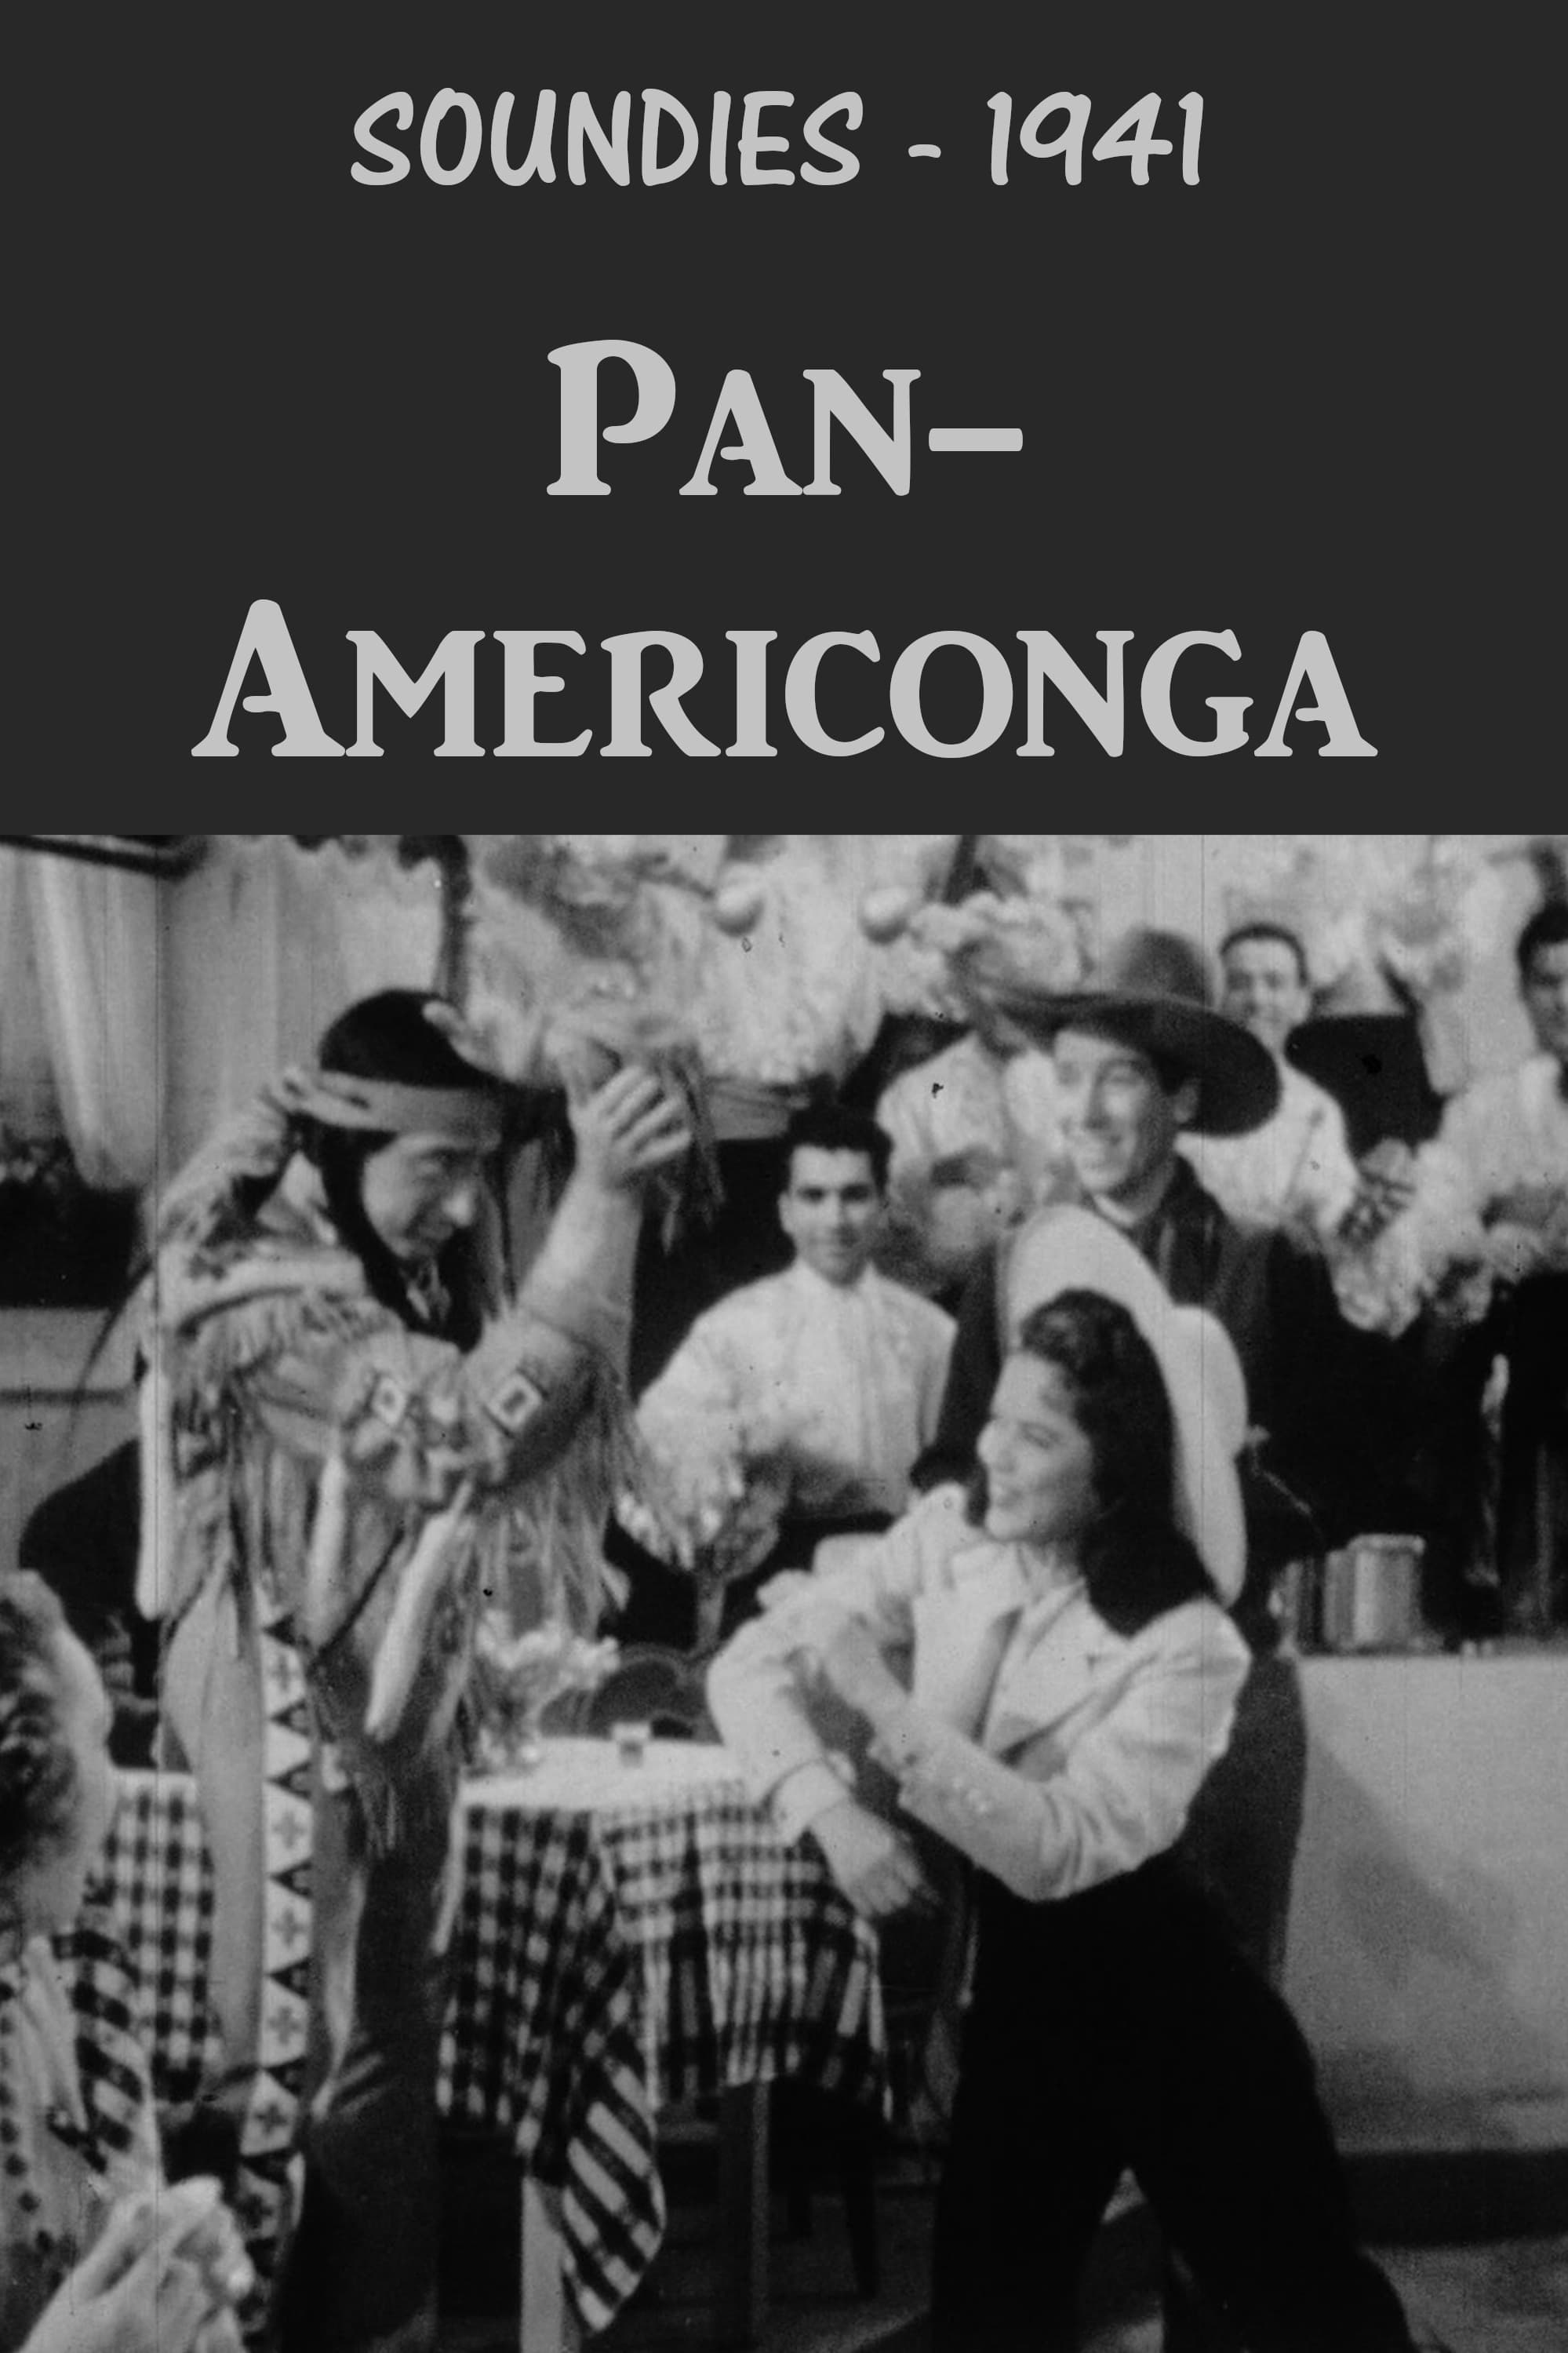 Pan-Americonga